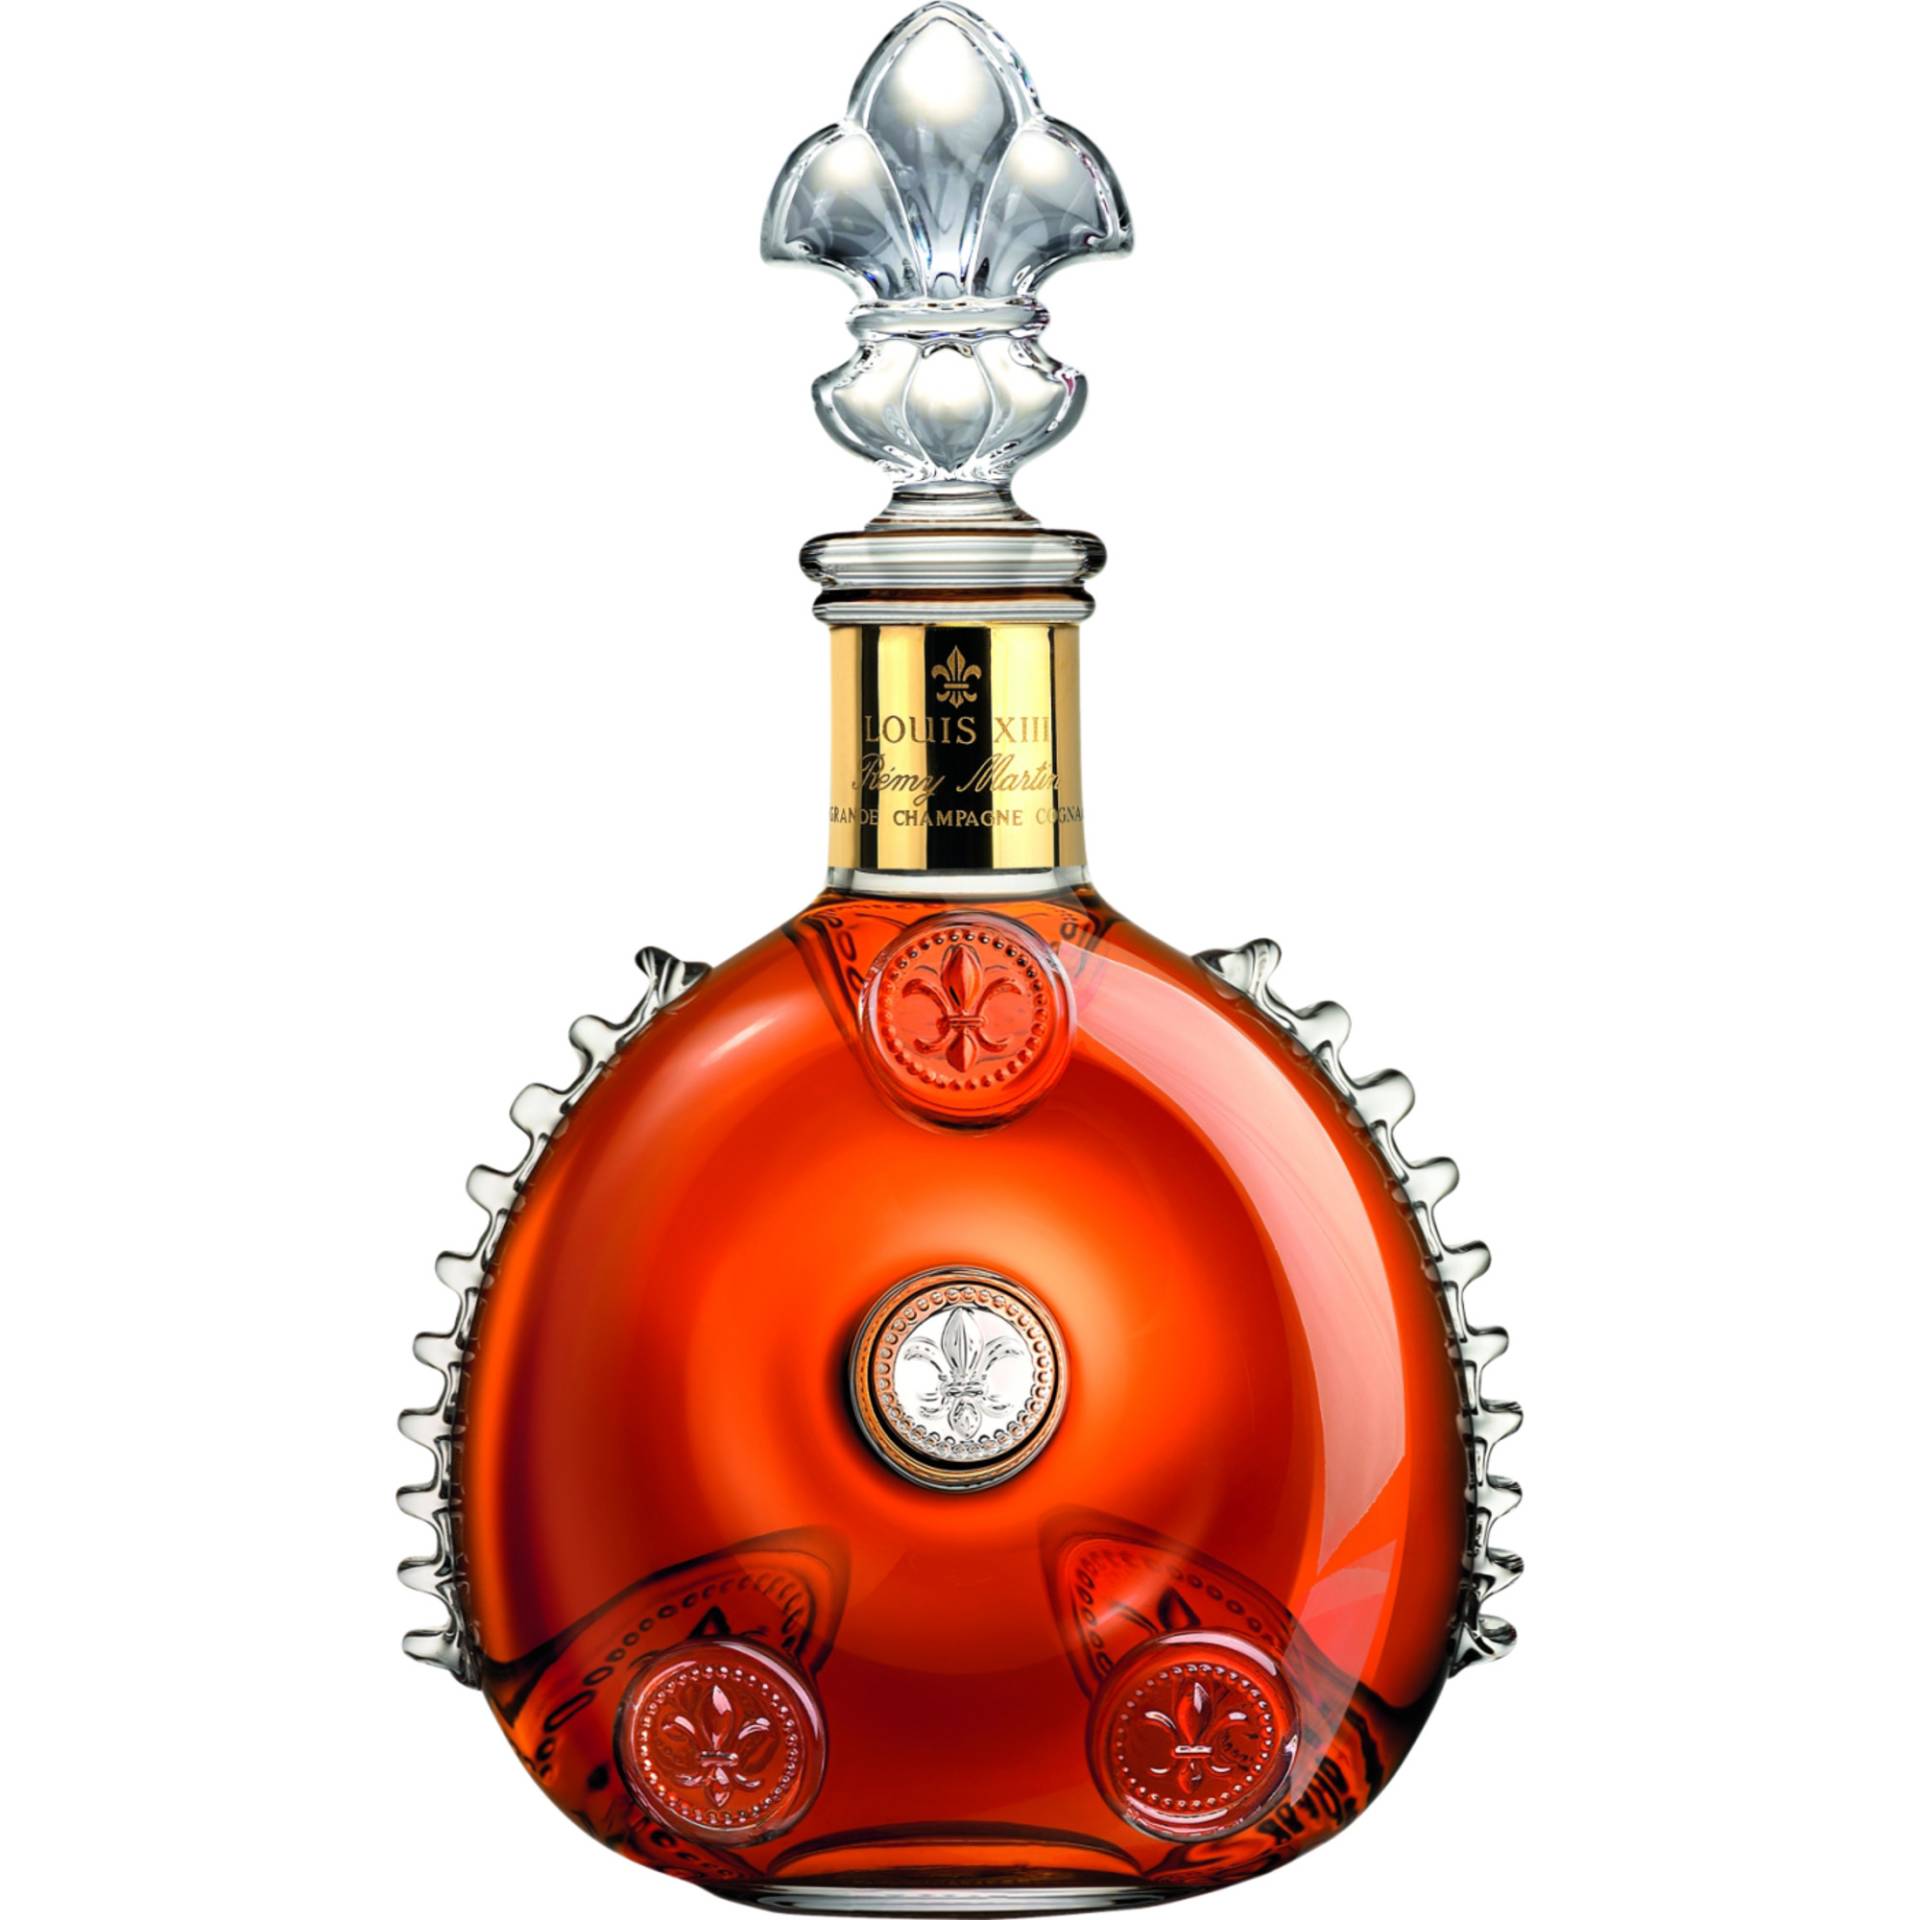 Rémy Martin Louis XIII Cognac, Cognac AOP, 0,7 L, 40% Vol., in Geschenketui, Cognac, Spirituosen von E.REMY MARTIN & Co., 20, Rue de la Société Vinicole – 16100 COGNAC, Frankreich